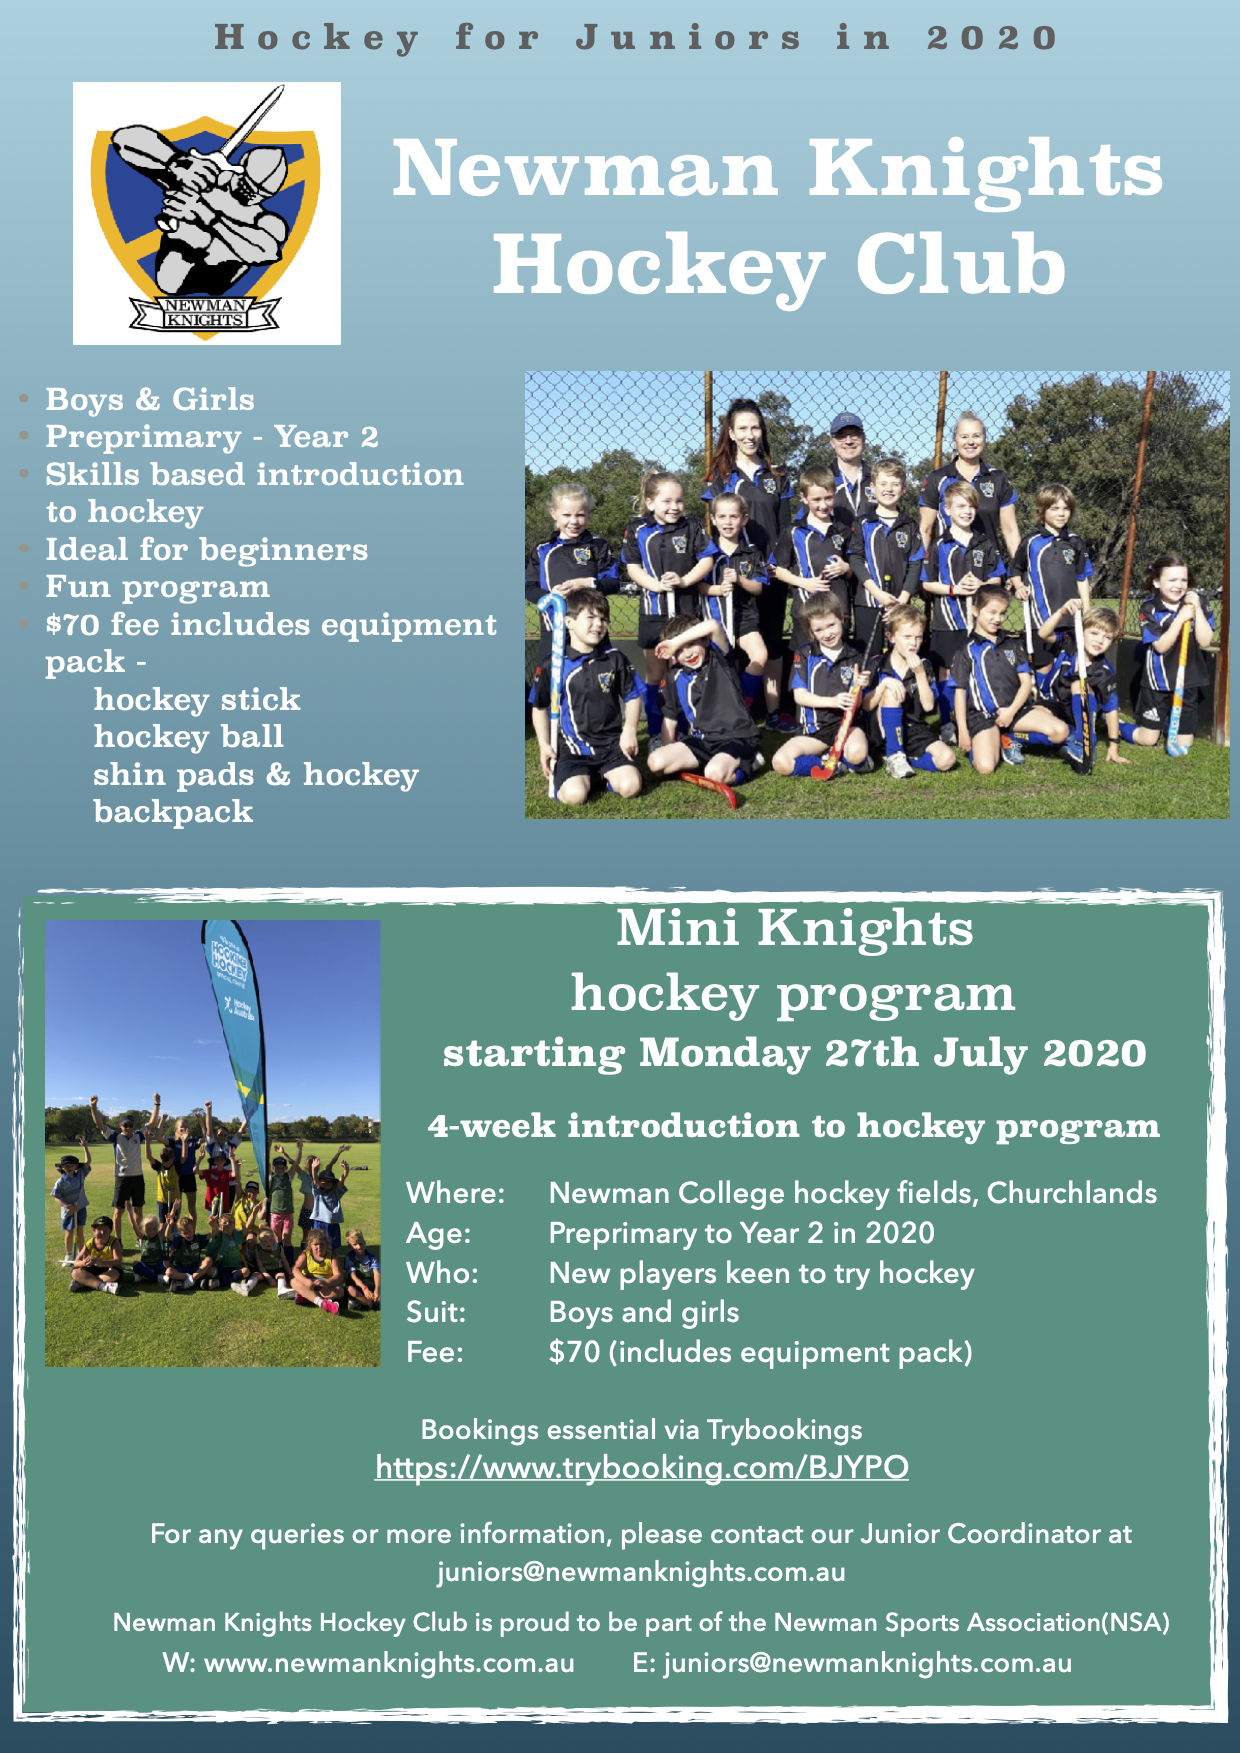 Newman Knights Hockey Club/ Mini Knights Program